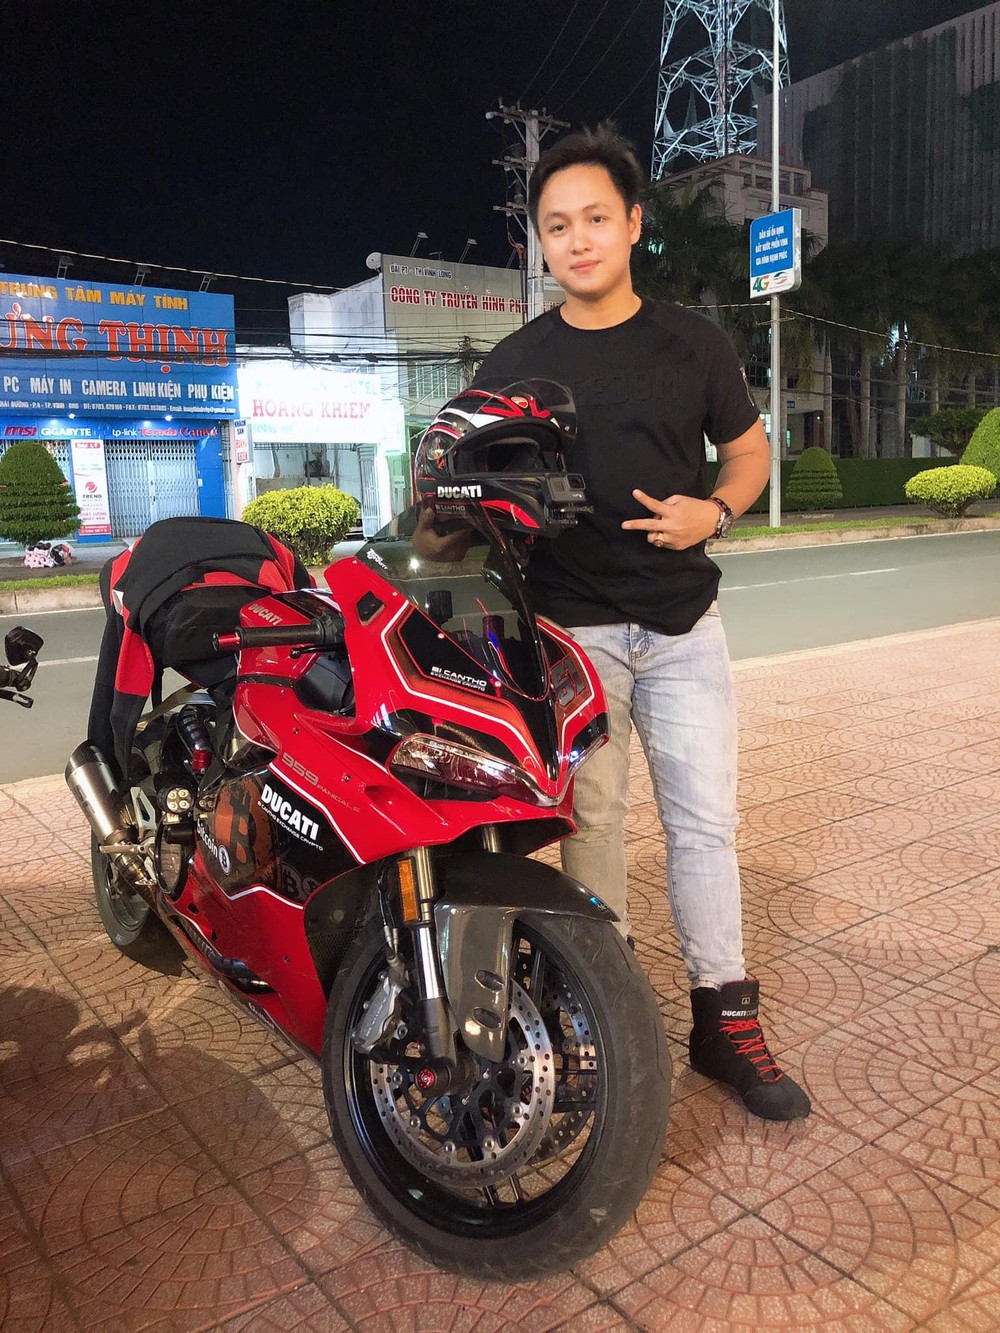 Chiêm ngưỡng siêu xe Ducati 959 Panigale cực độc của chuyên gia Phan Nguyễn Tấn Huy - Ảnh 3.